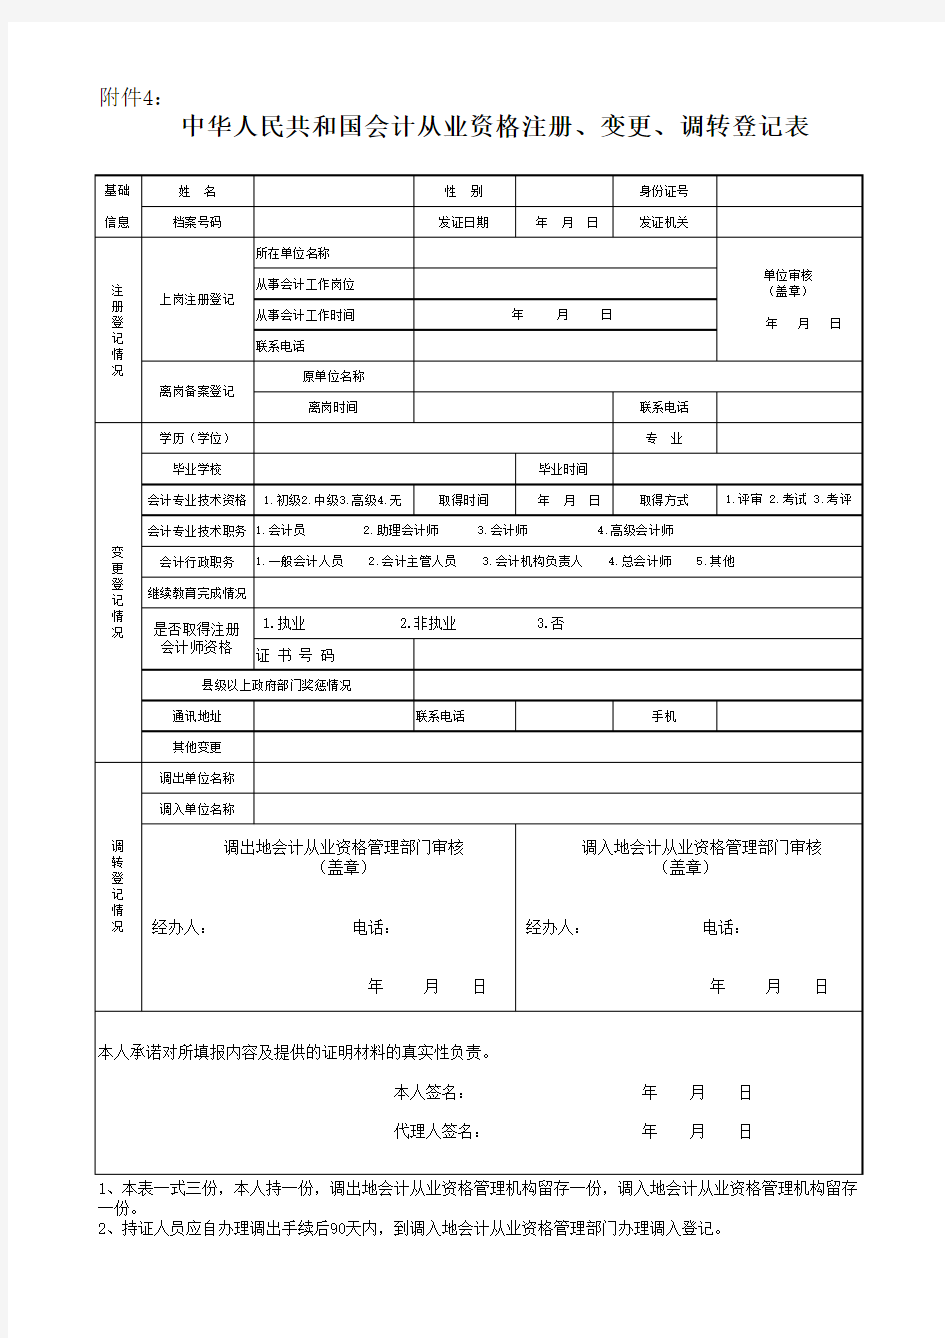 中华人民共和国会计从业资格注册、变更、调转登记表调转登记表